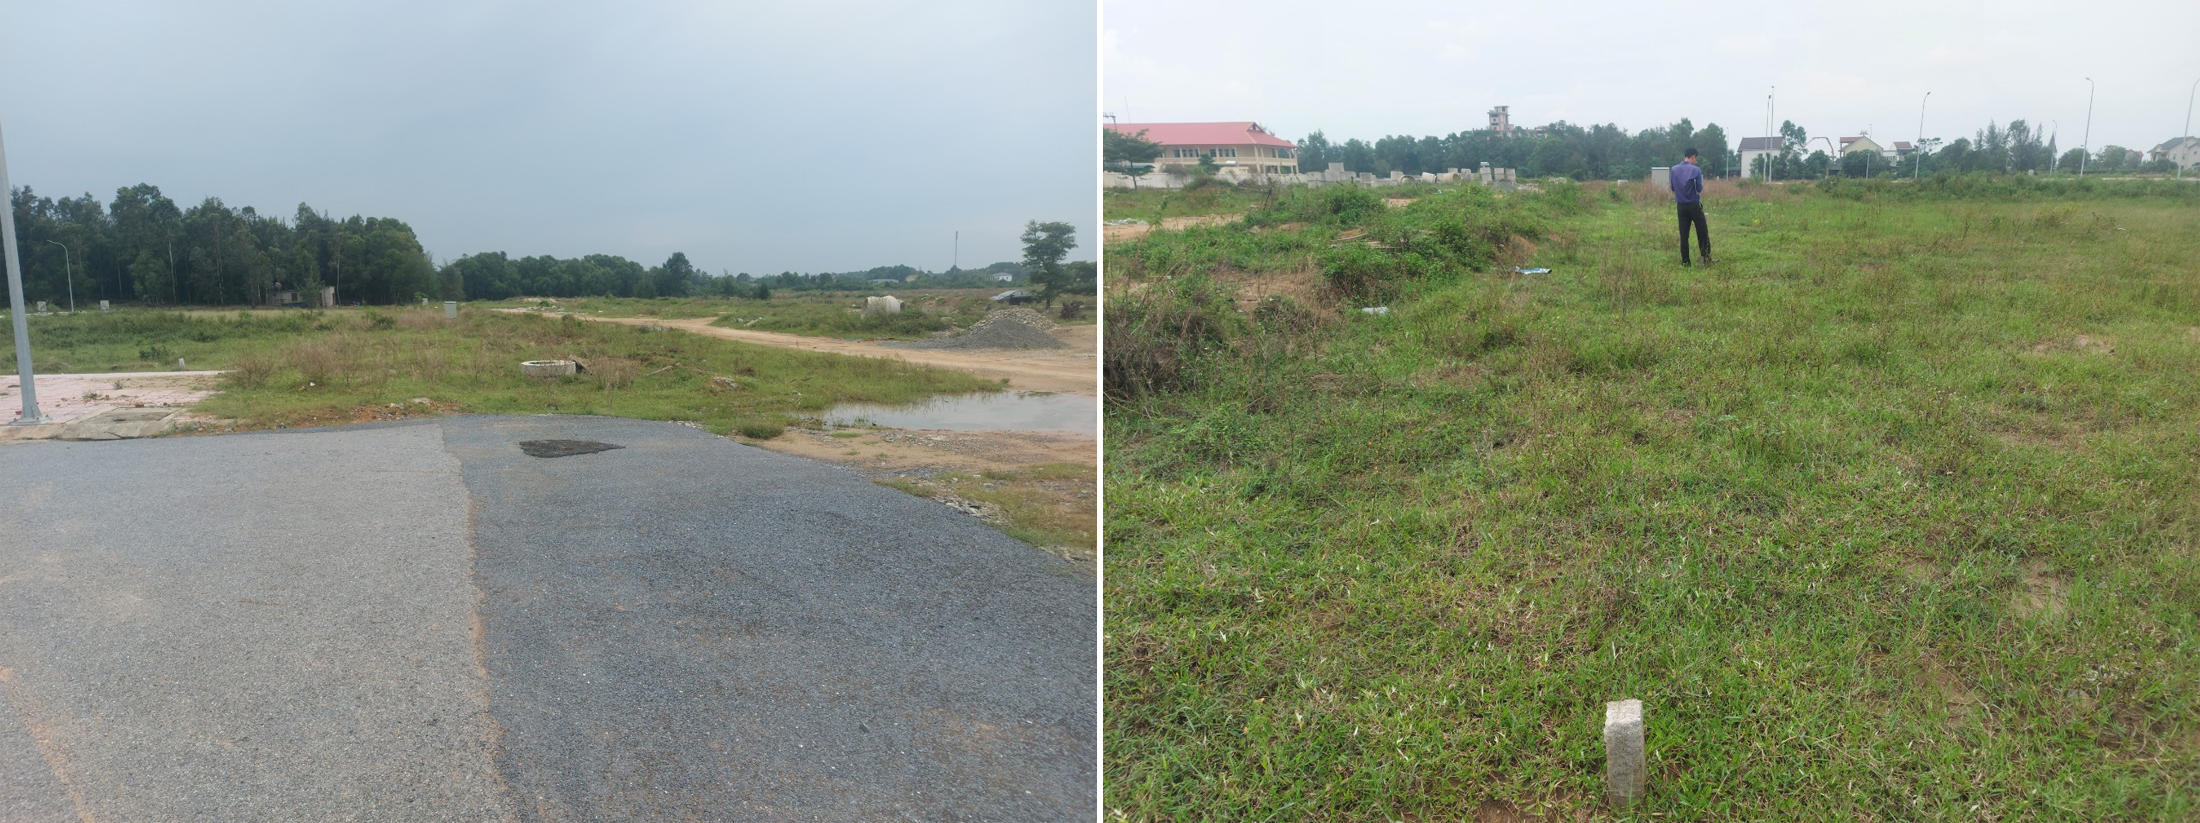 Khu vực quy hoạch đường 21, phường Nghi Hòa, thị xã Cửa Lò, nơi có những sai phạm trong giao đất tái định cư.